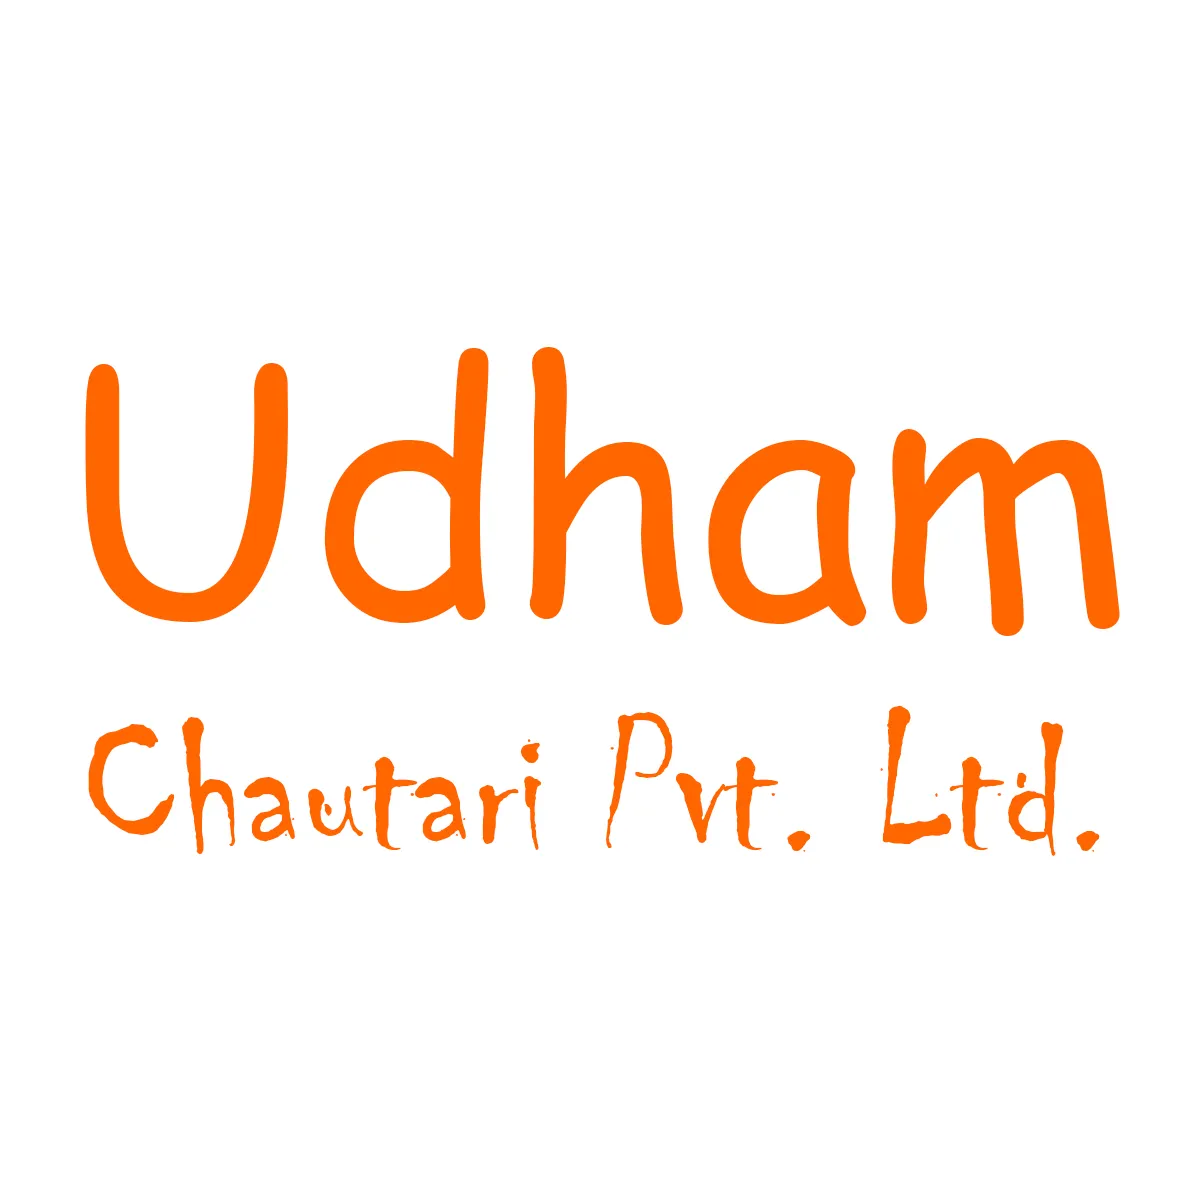 Udham Chautari Pvt. Ltd.